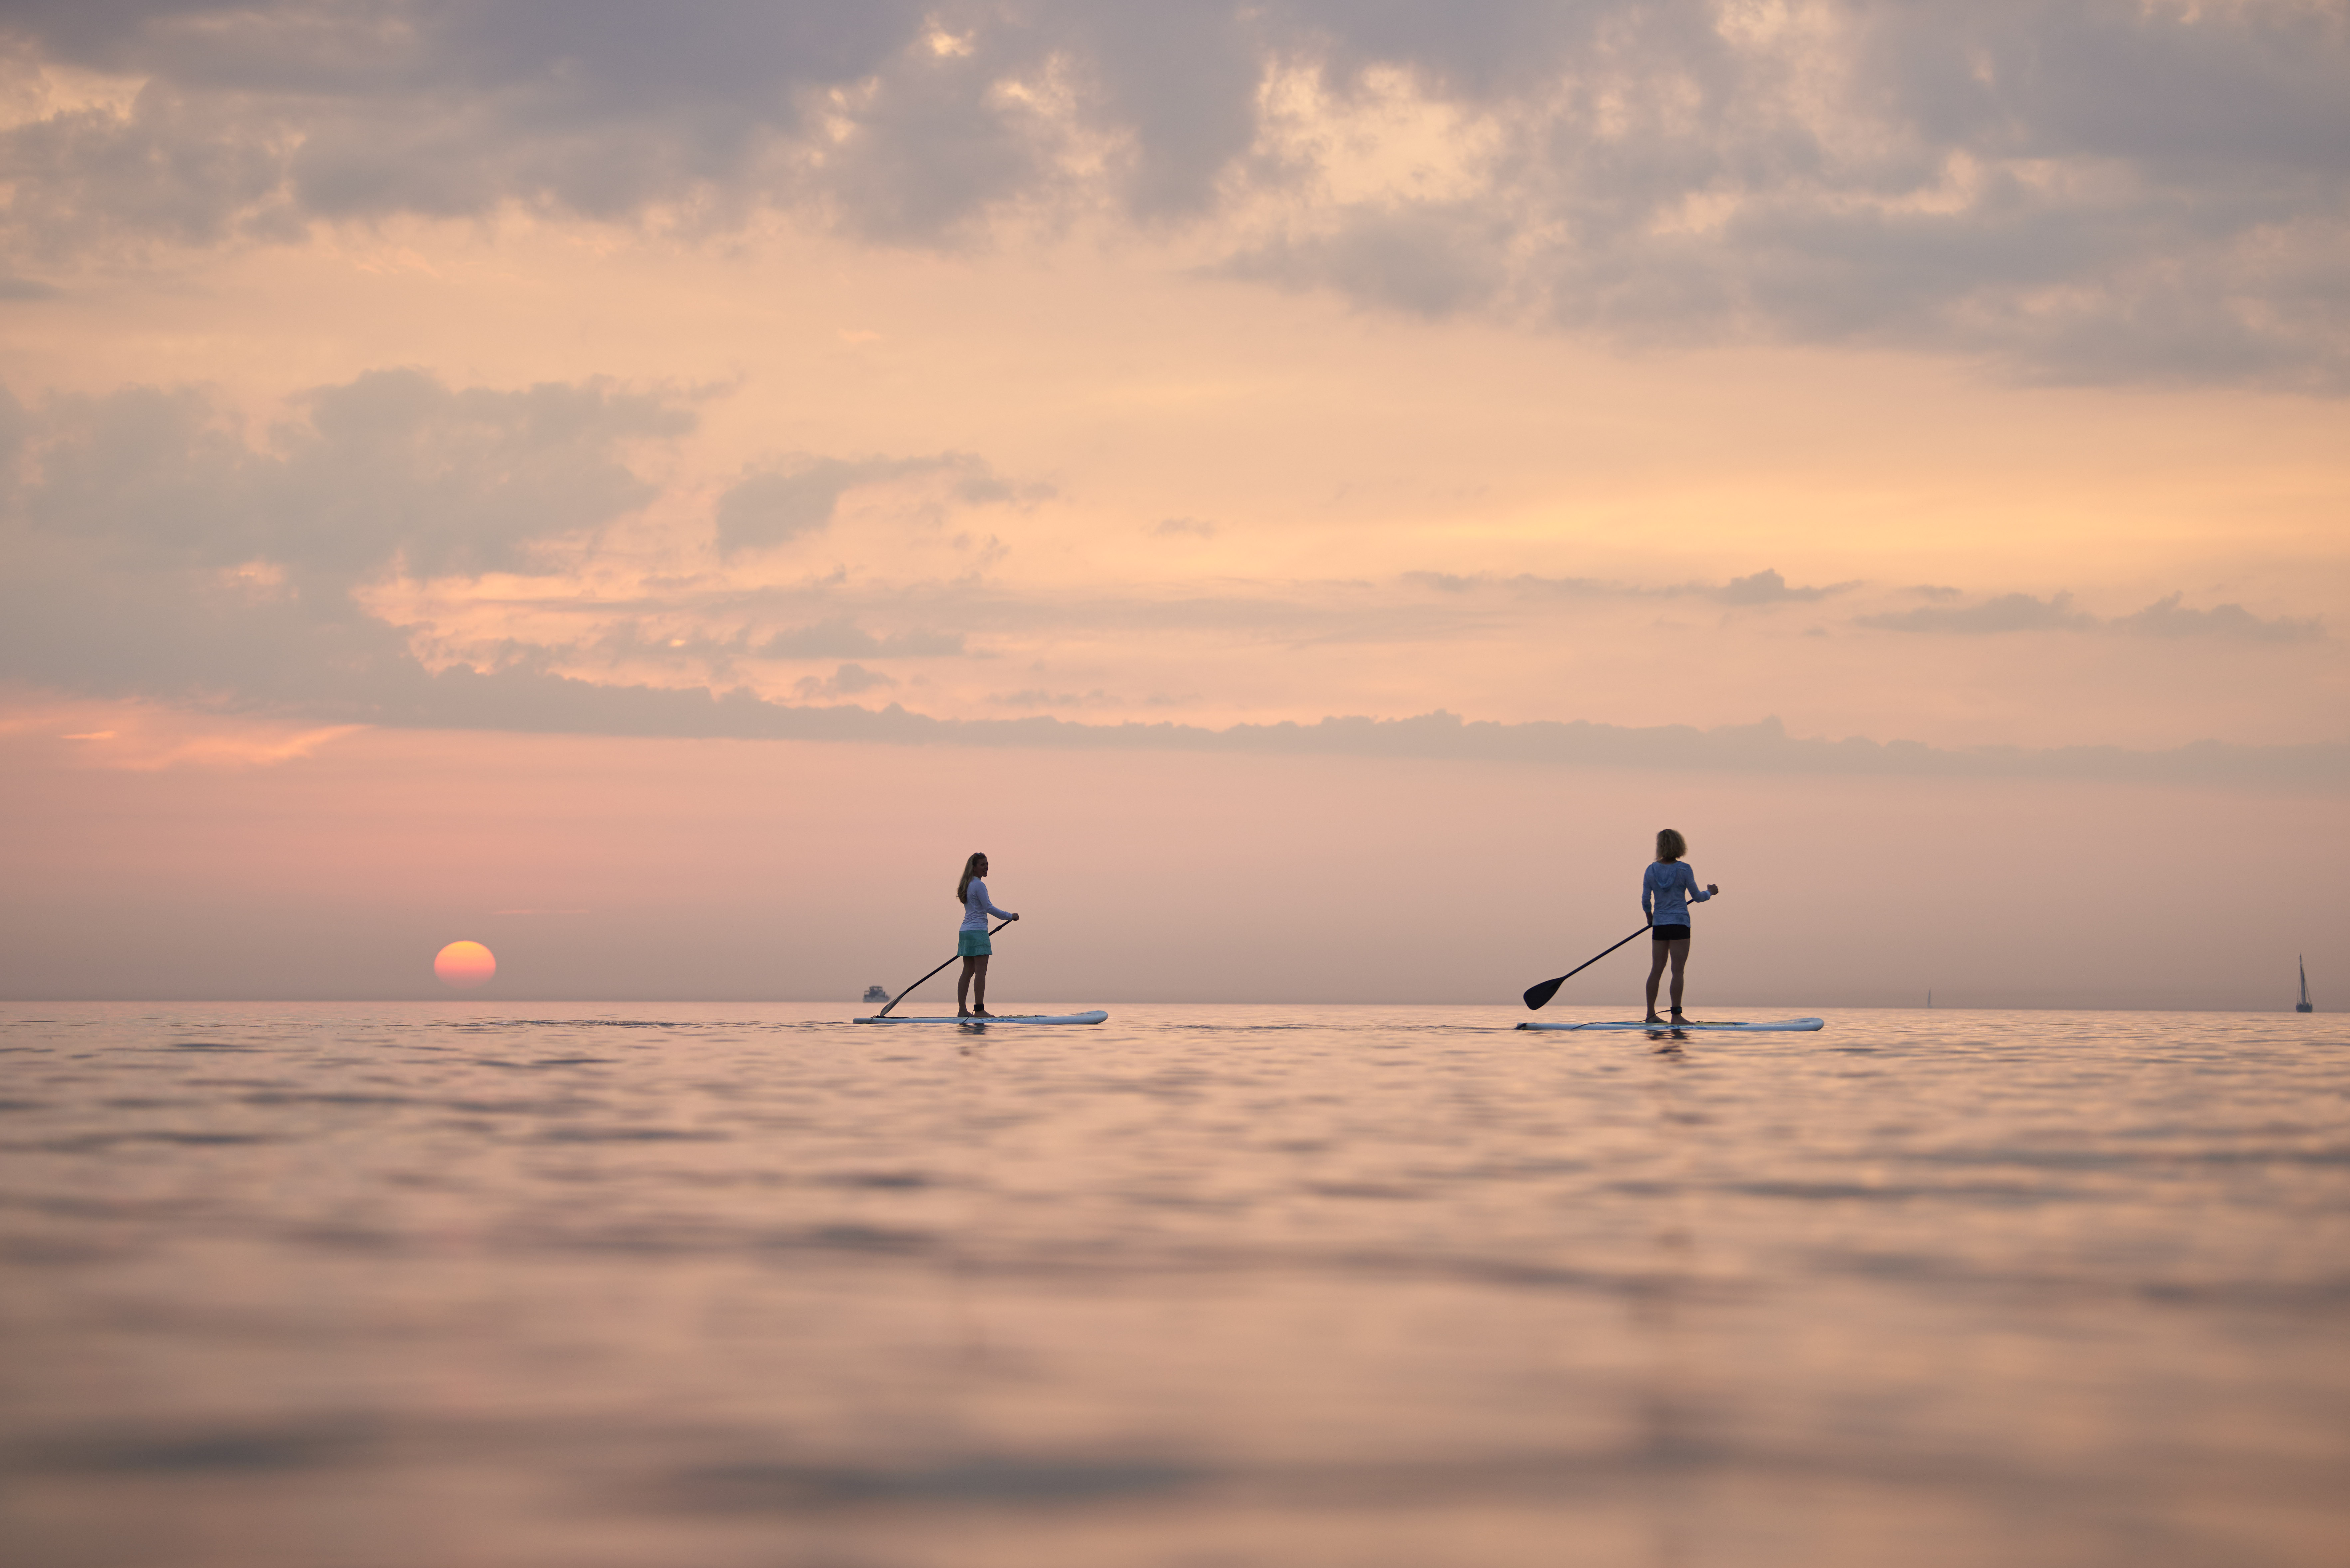 Two women paddleboarding on Lake Michigan during sunset.